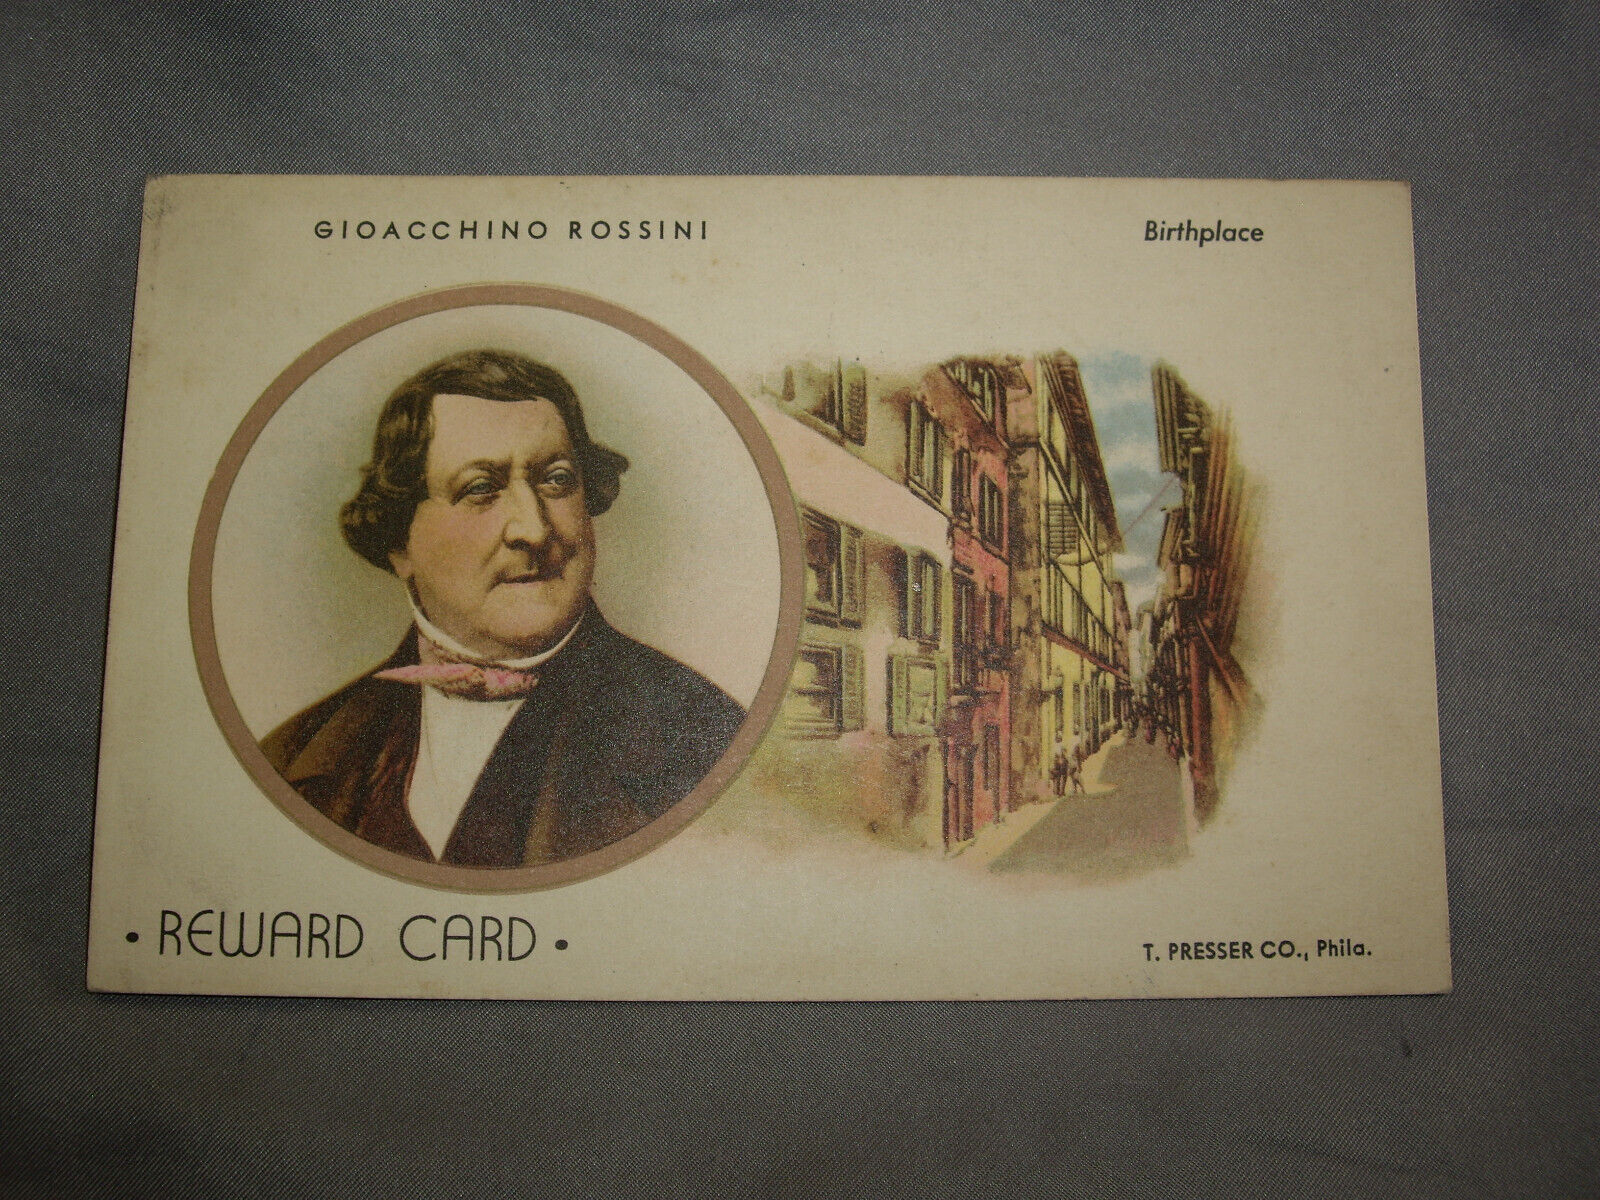 Postcard, Gioacchino Rossini - T. Presser Co., Phila, Music Reward Card